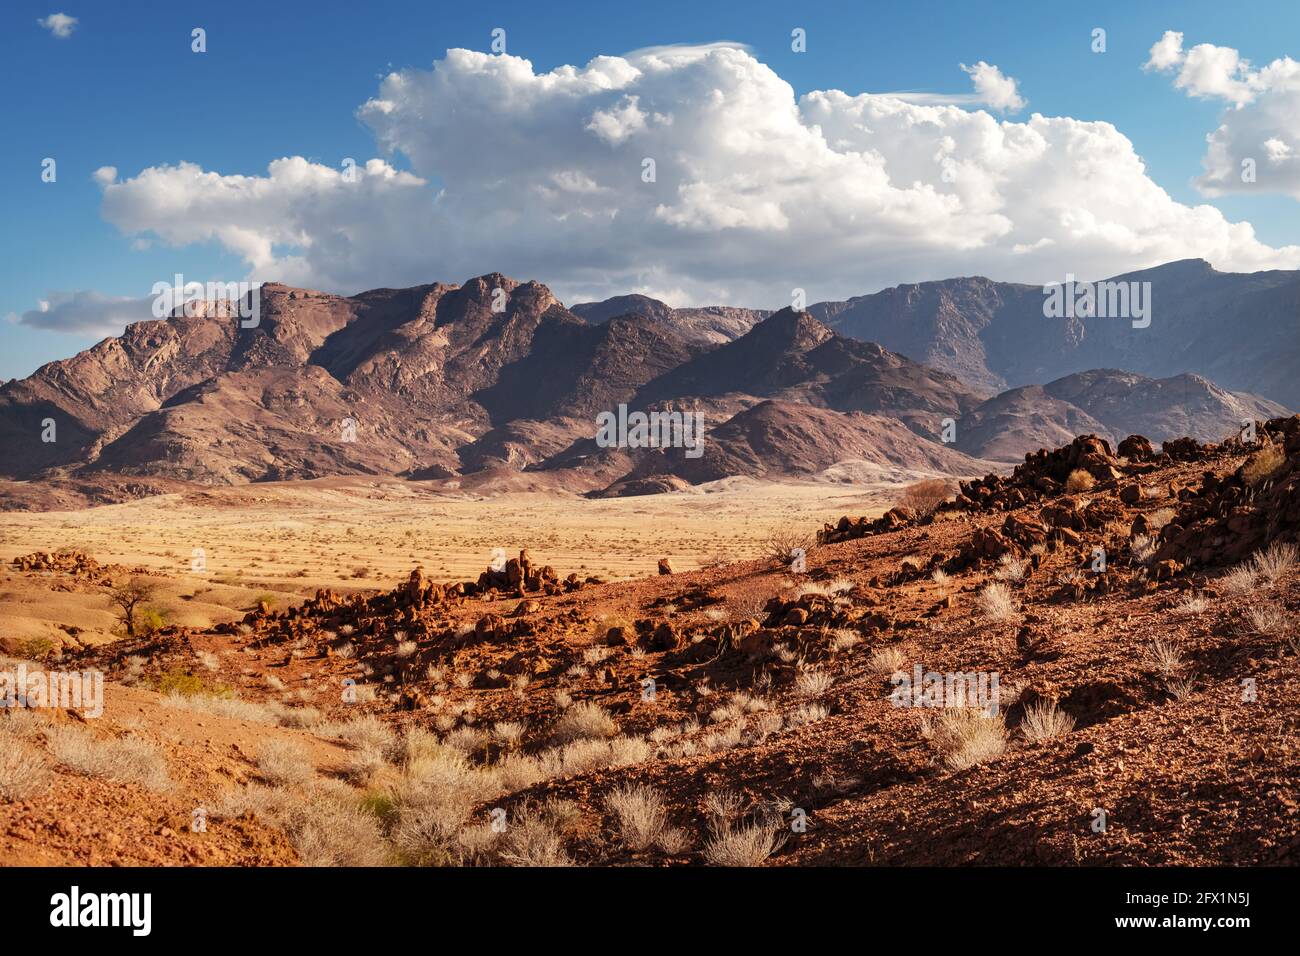 Rocas del desierto de Namib, Namibia, África. Montañas rojas y sabana amarilla con fondo de cielo azul. Fotografía de paisajes Foto de stock